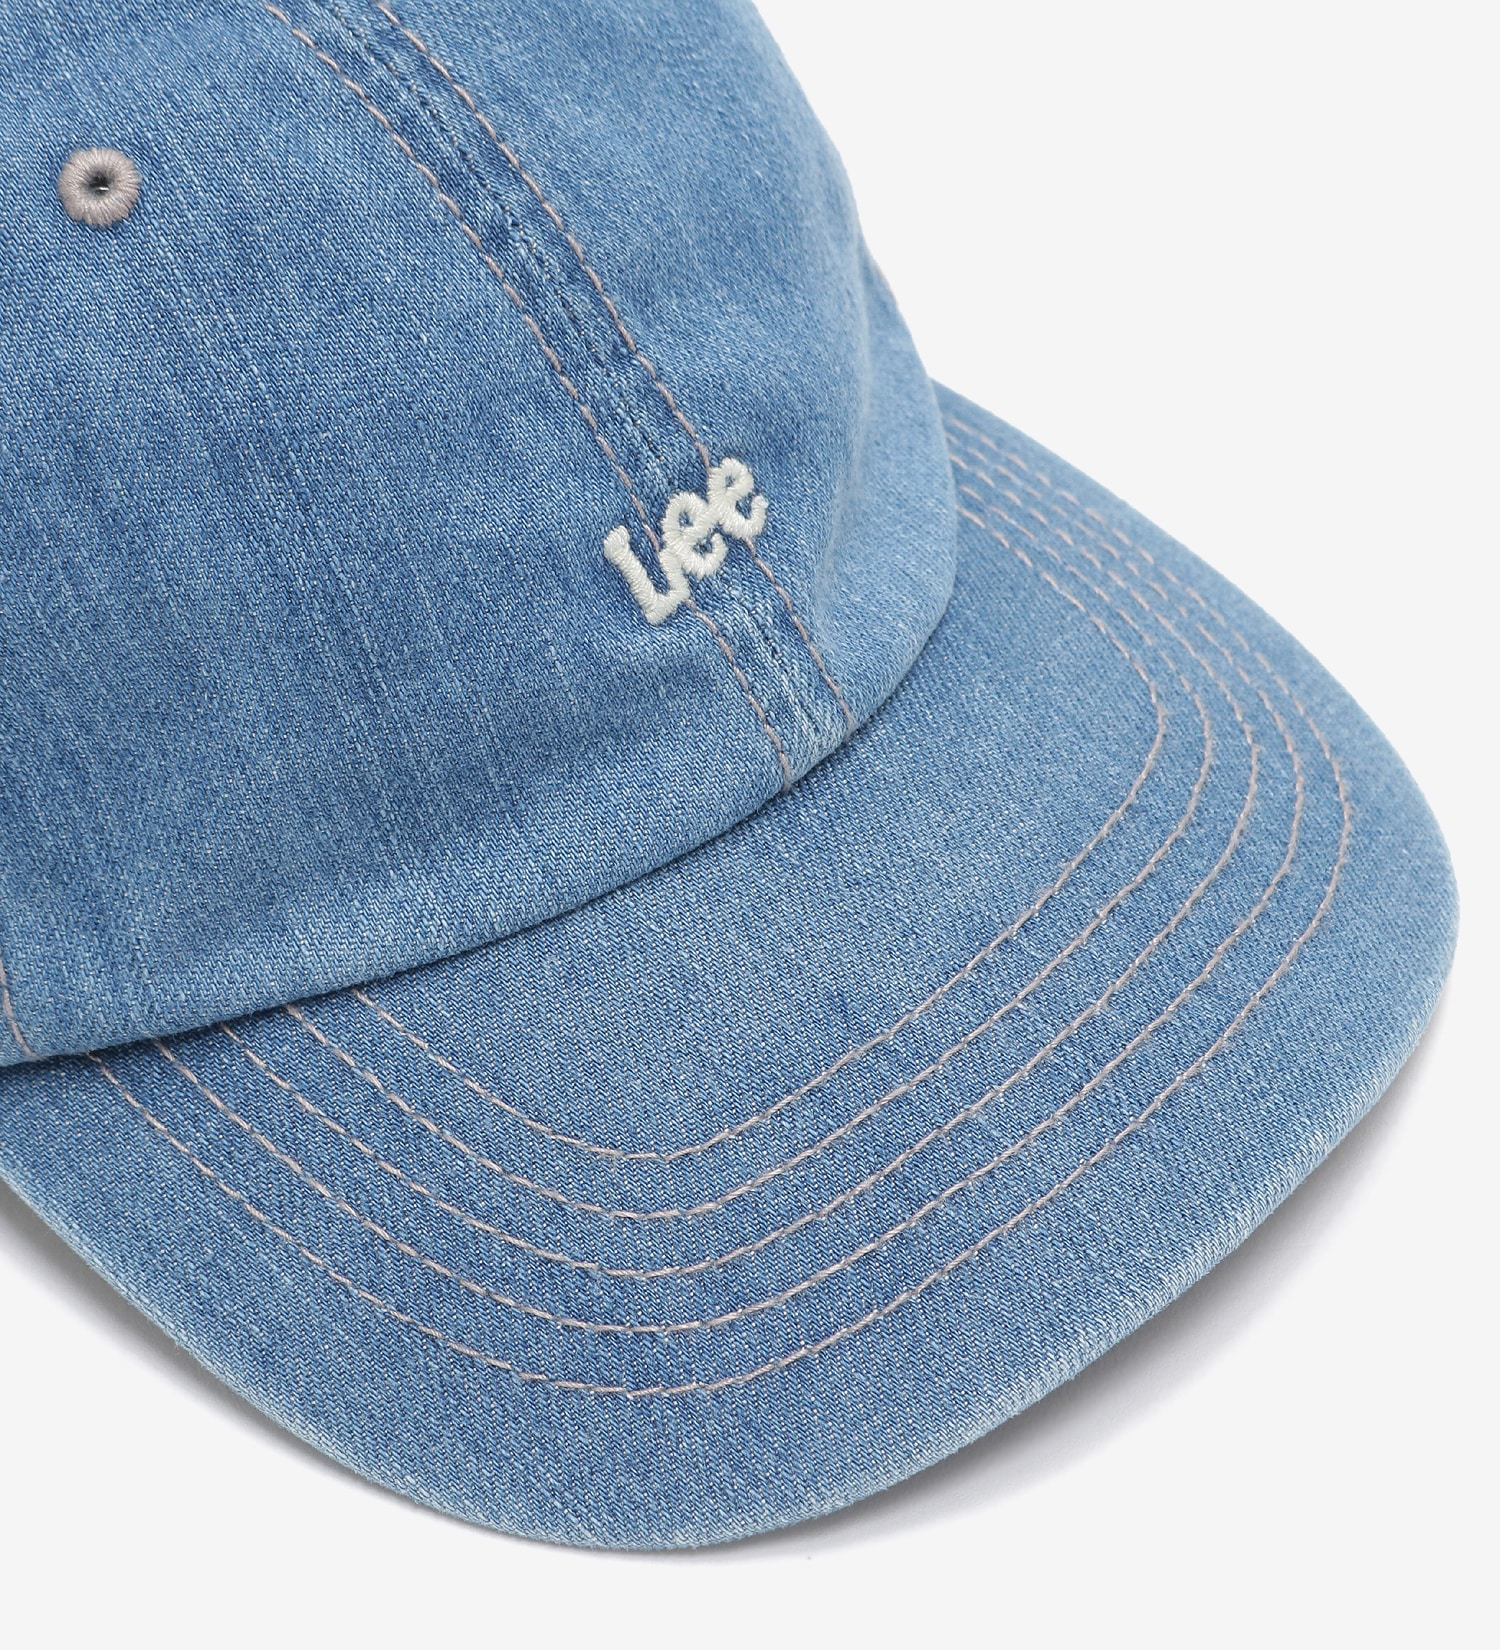 Lee(リー)のデニム ロゴキャップ|帽子/キャップ/メンズ|淡色ブルー